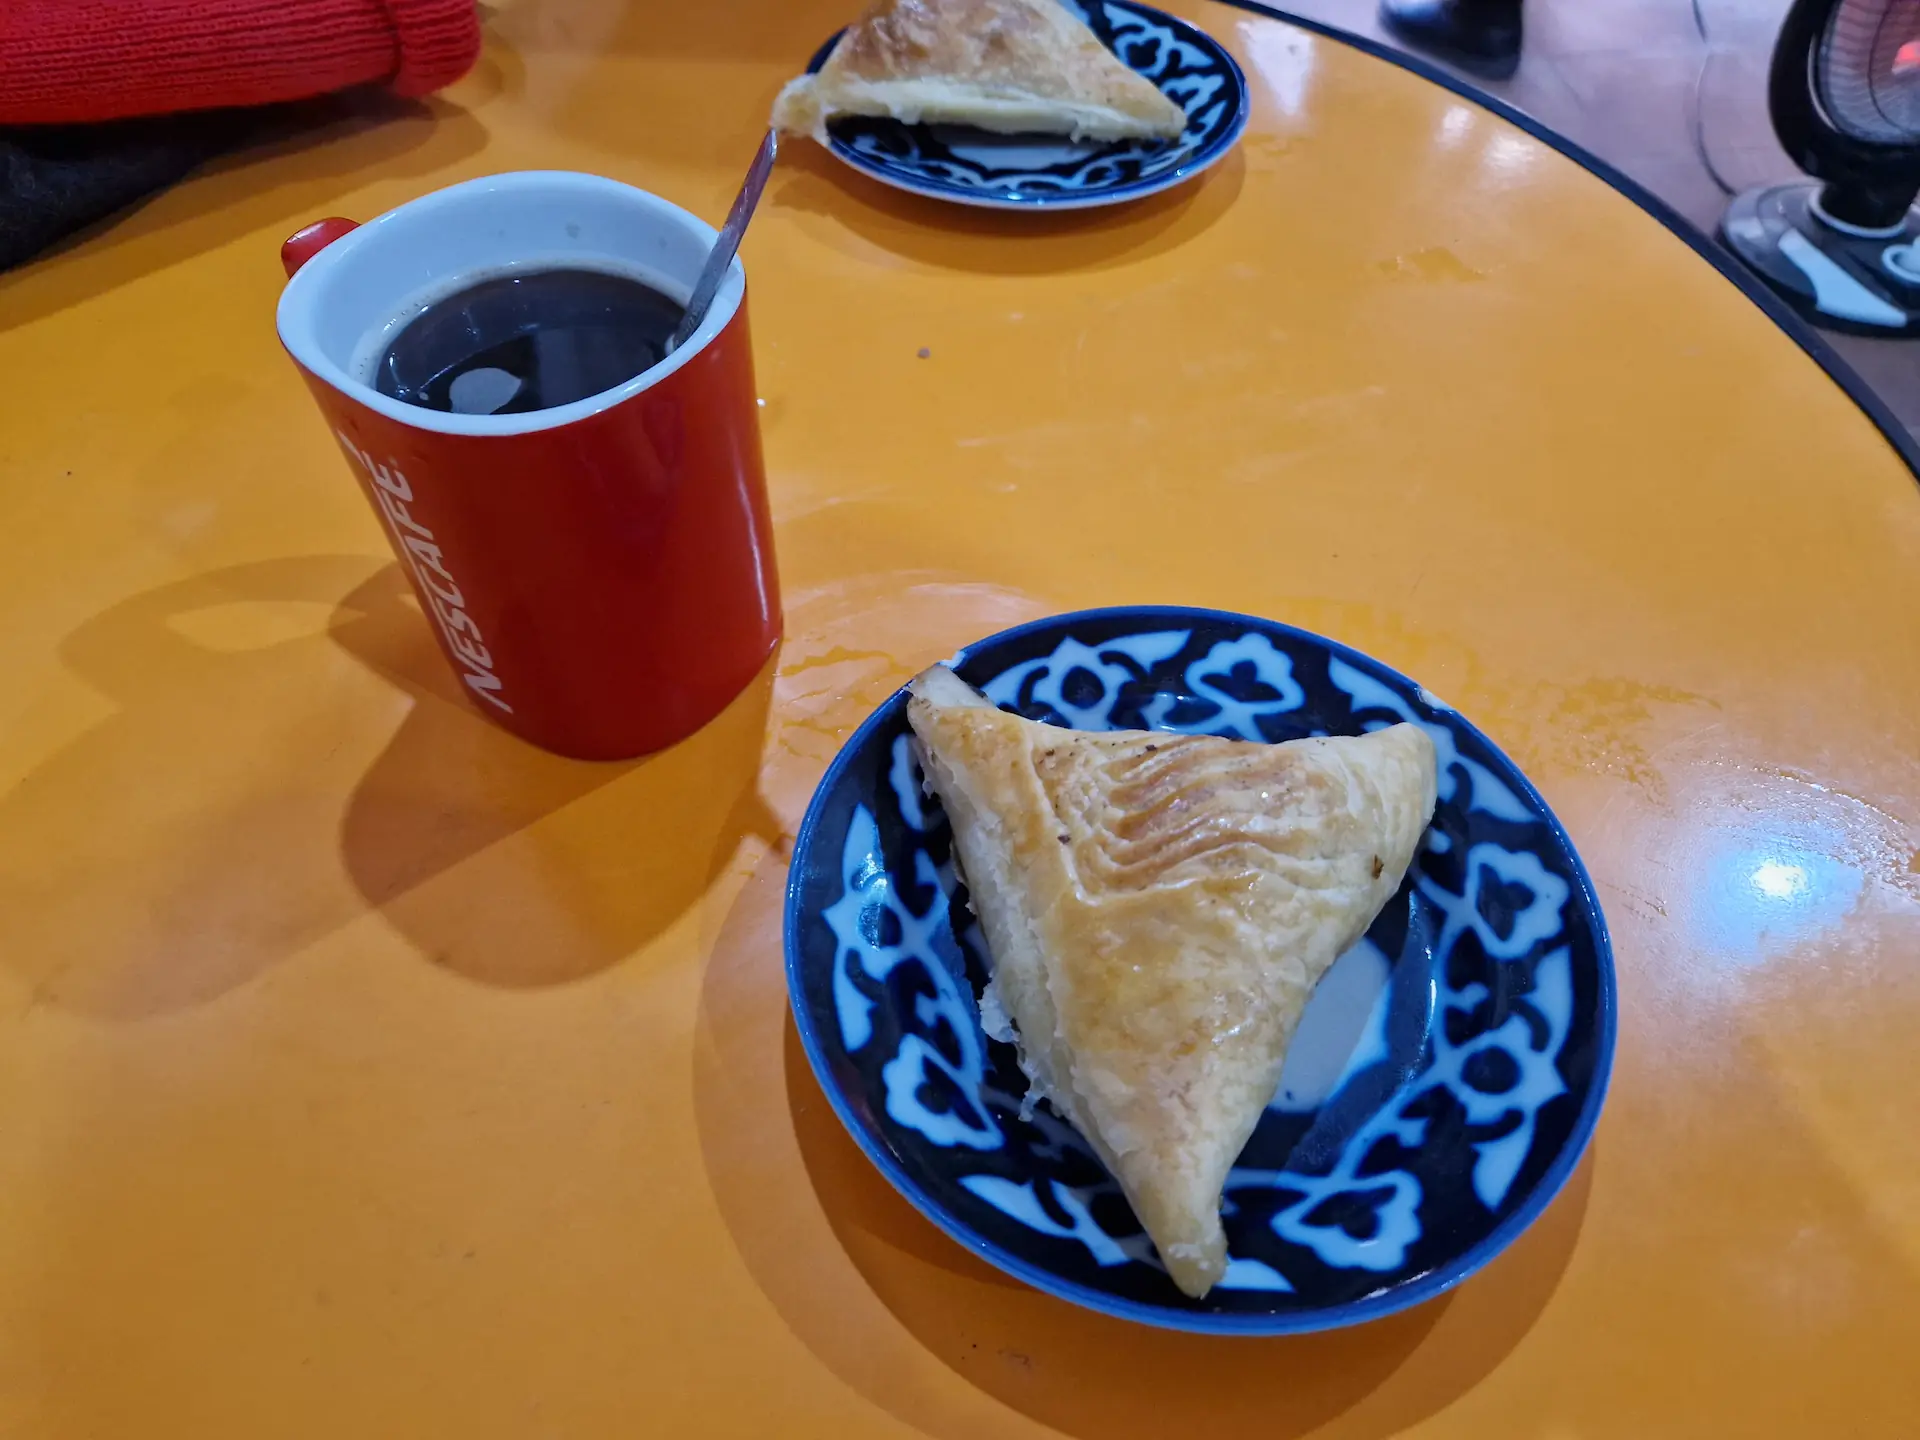 Samsa triangulaire et café noir instantané dans une tasse Nescafé rouge, sur une petite table en plastique orange.